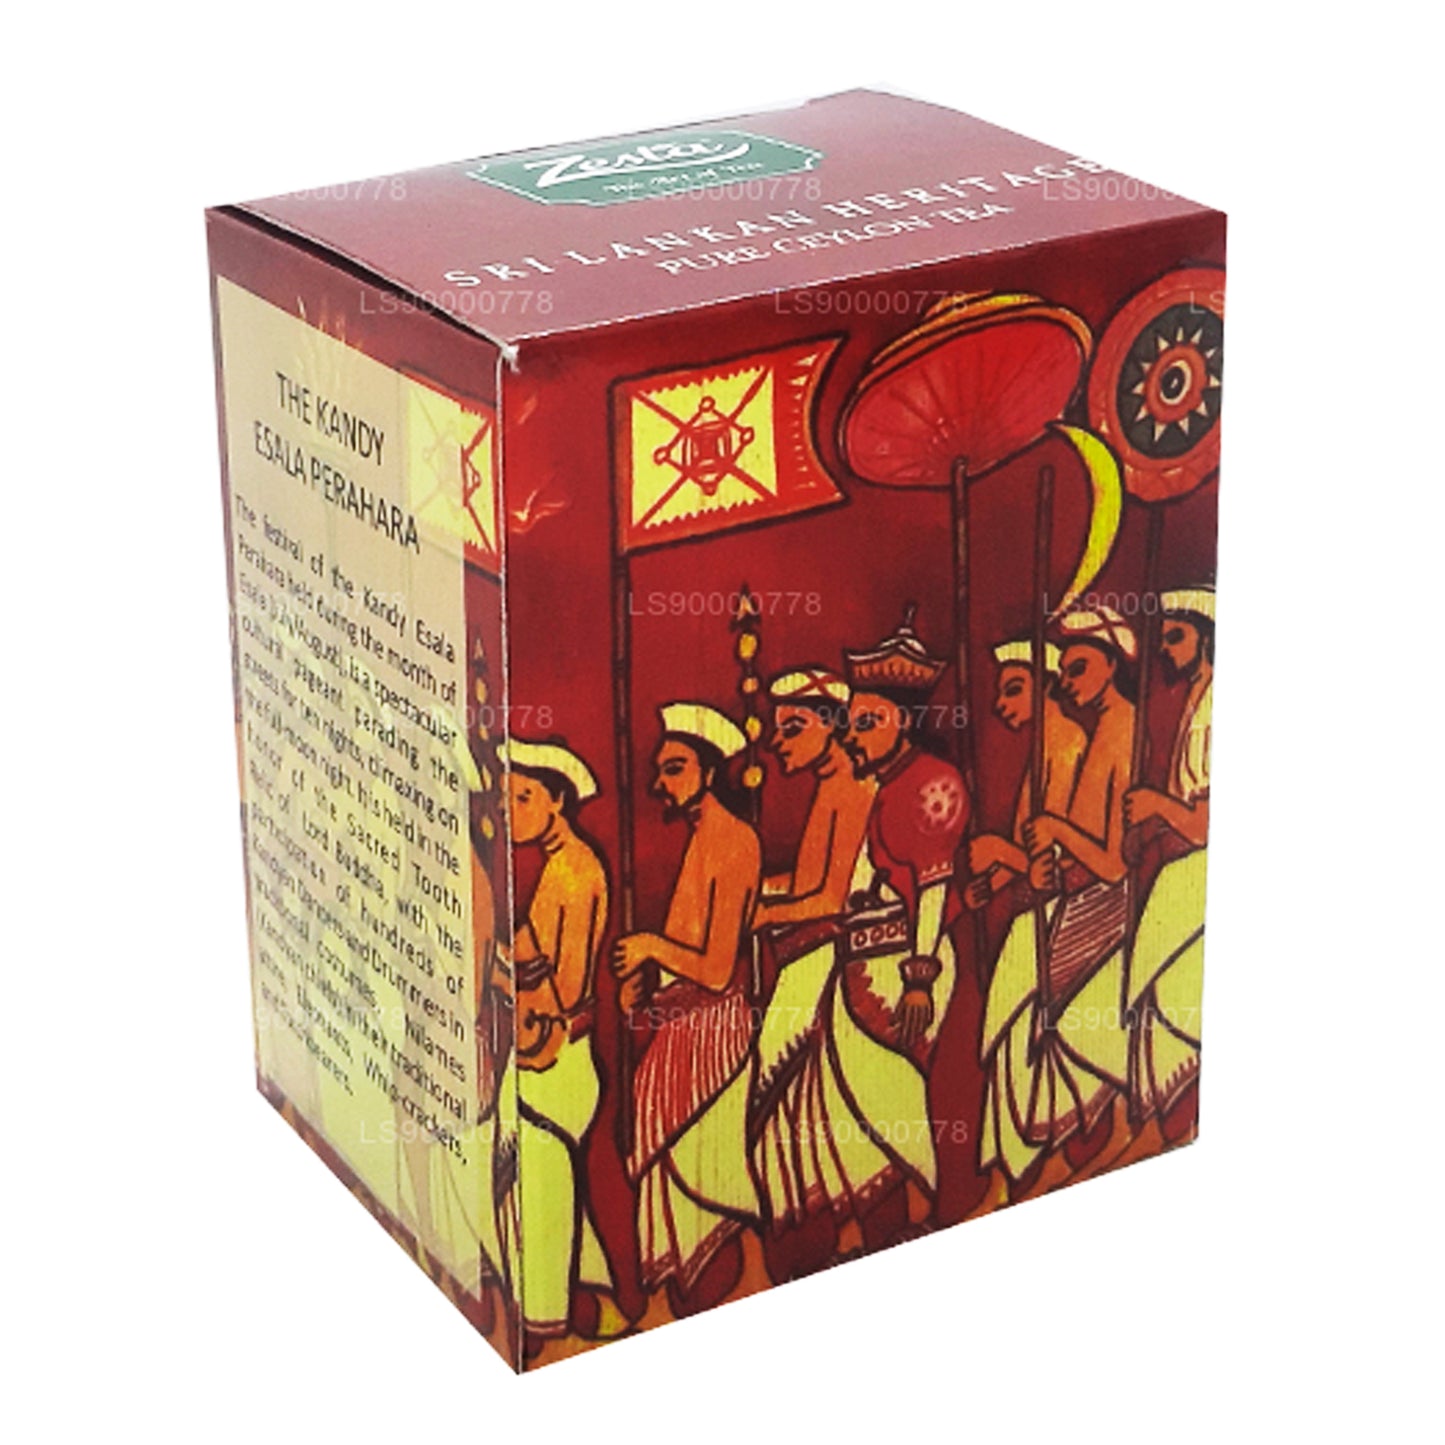 Чистый цейлонский чай Zesta «Наследие Шри-Ланки» Kenilworth PEKOE 1 (100 г)